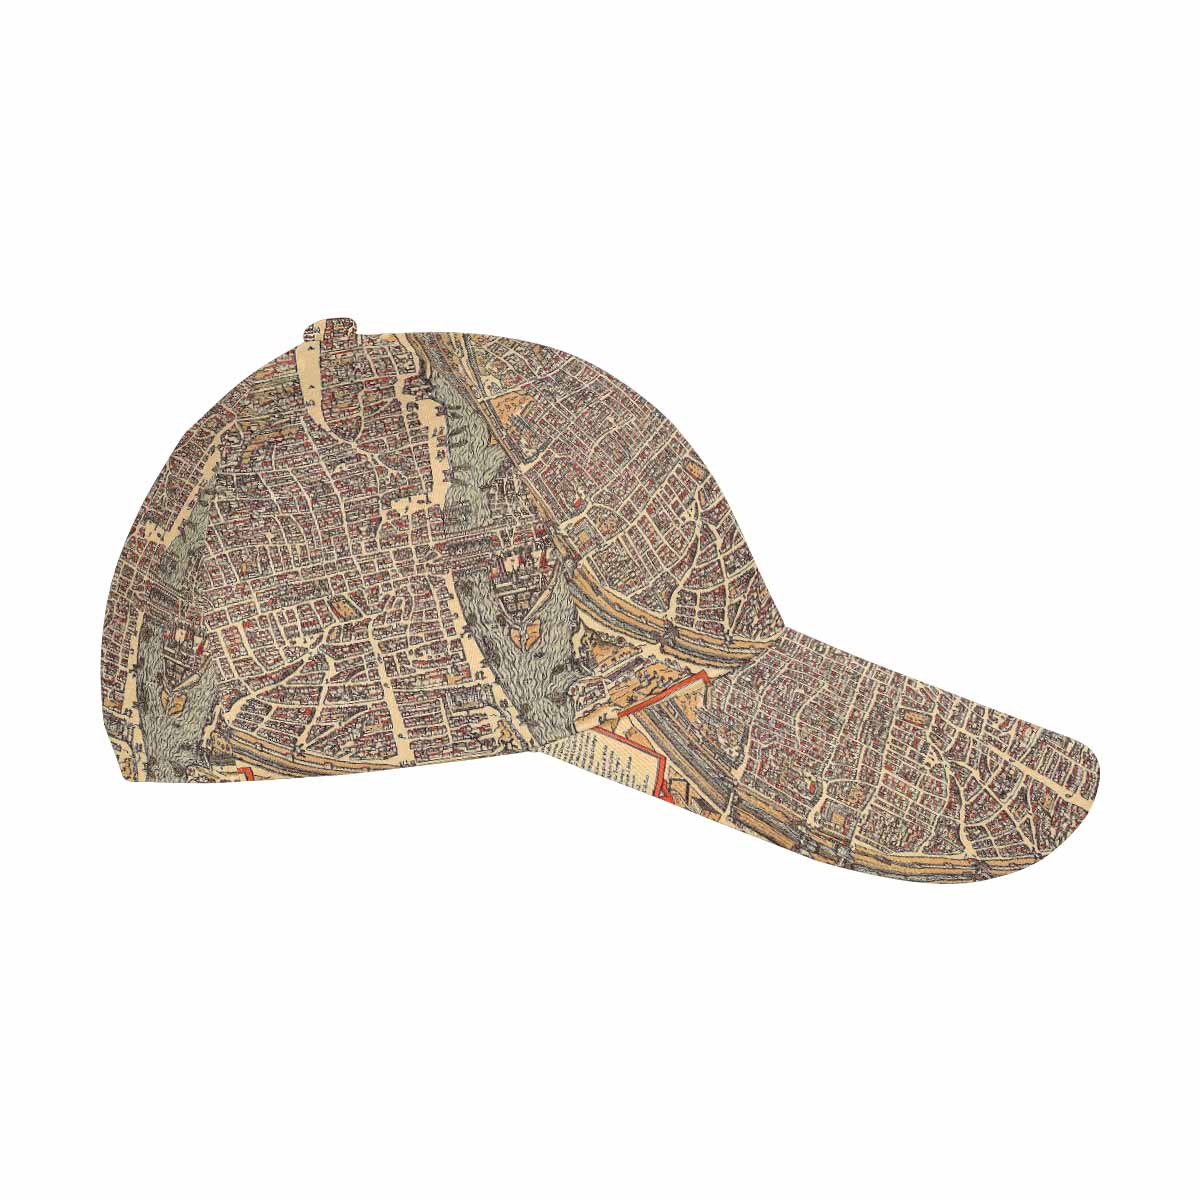 Antique Map design dad cap, trucker hat, Design 49